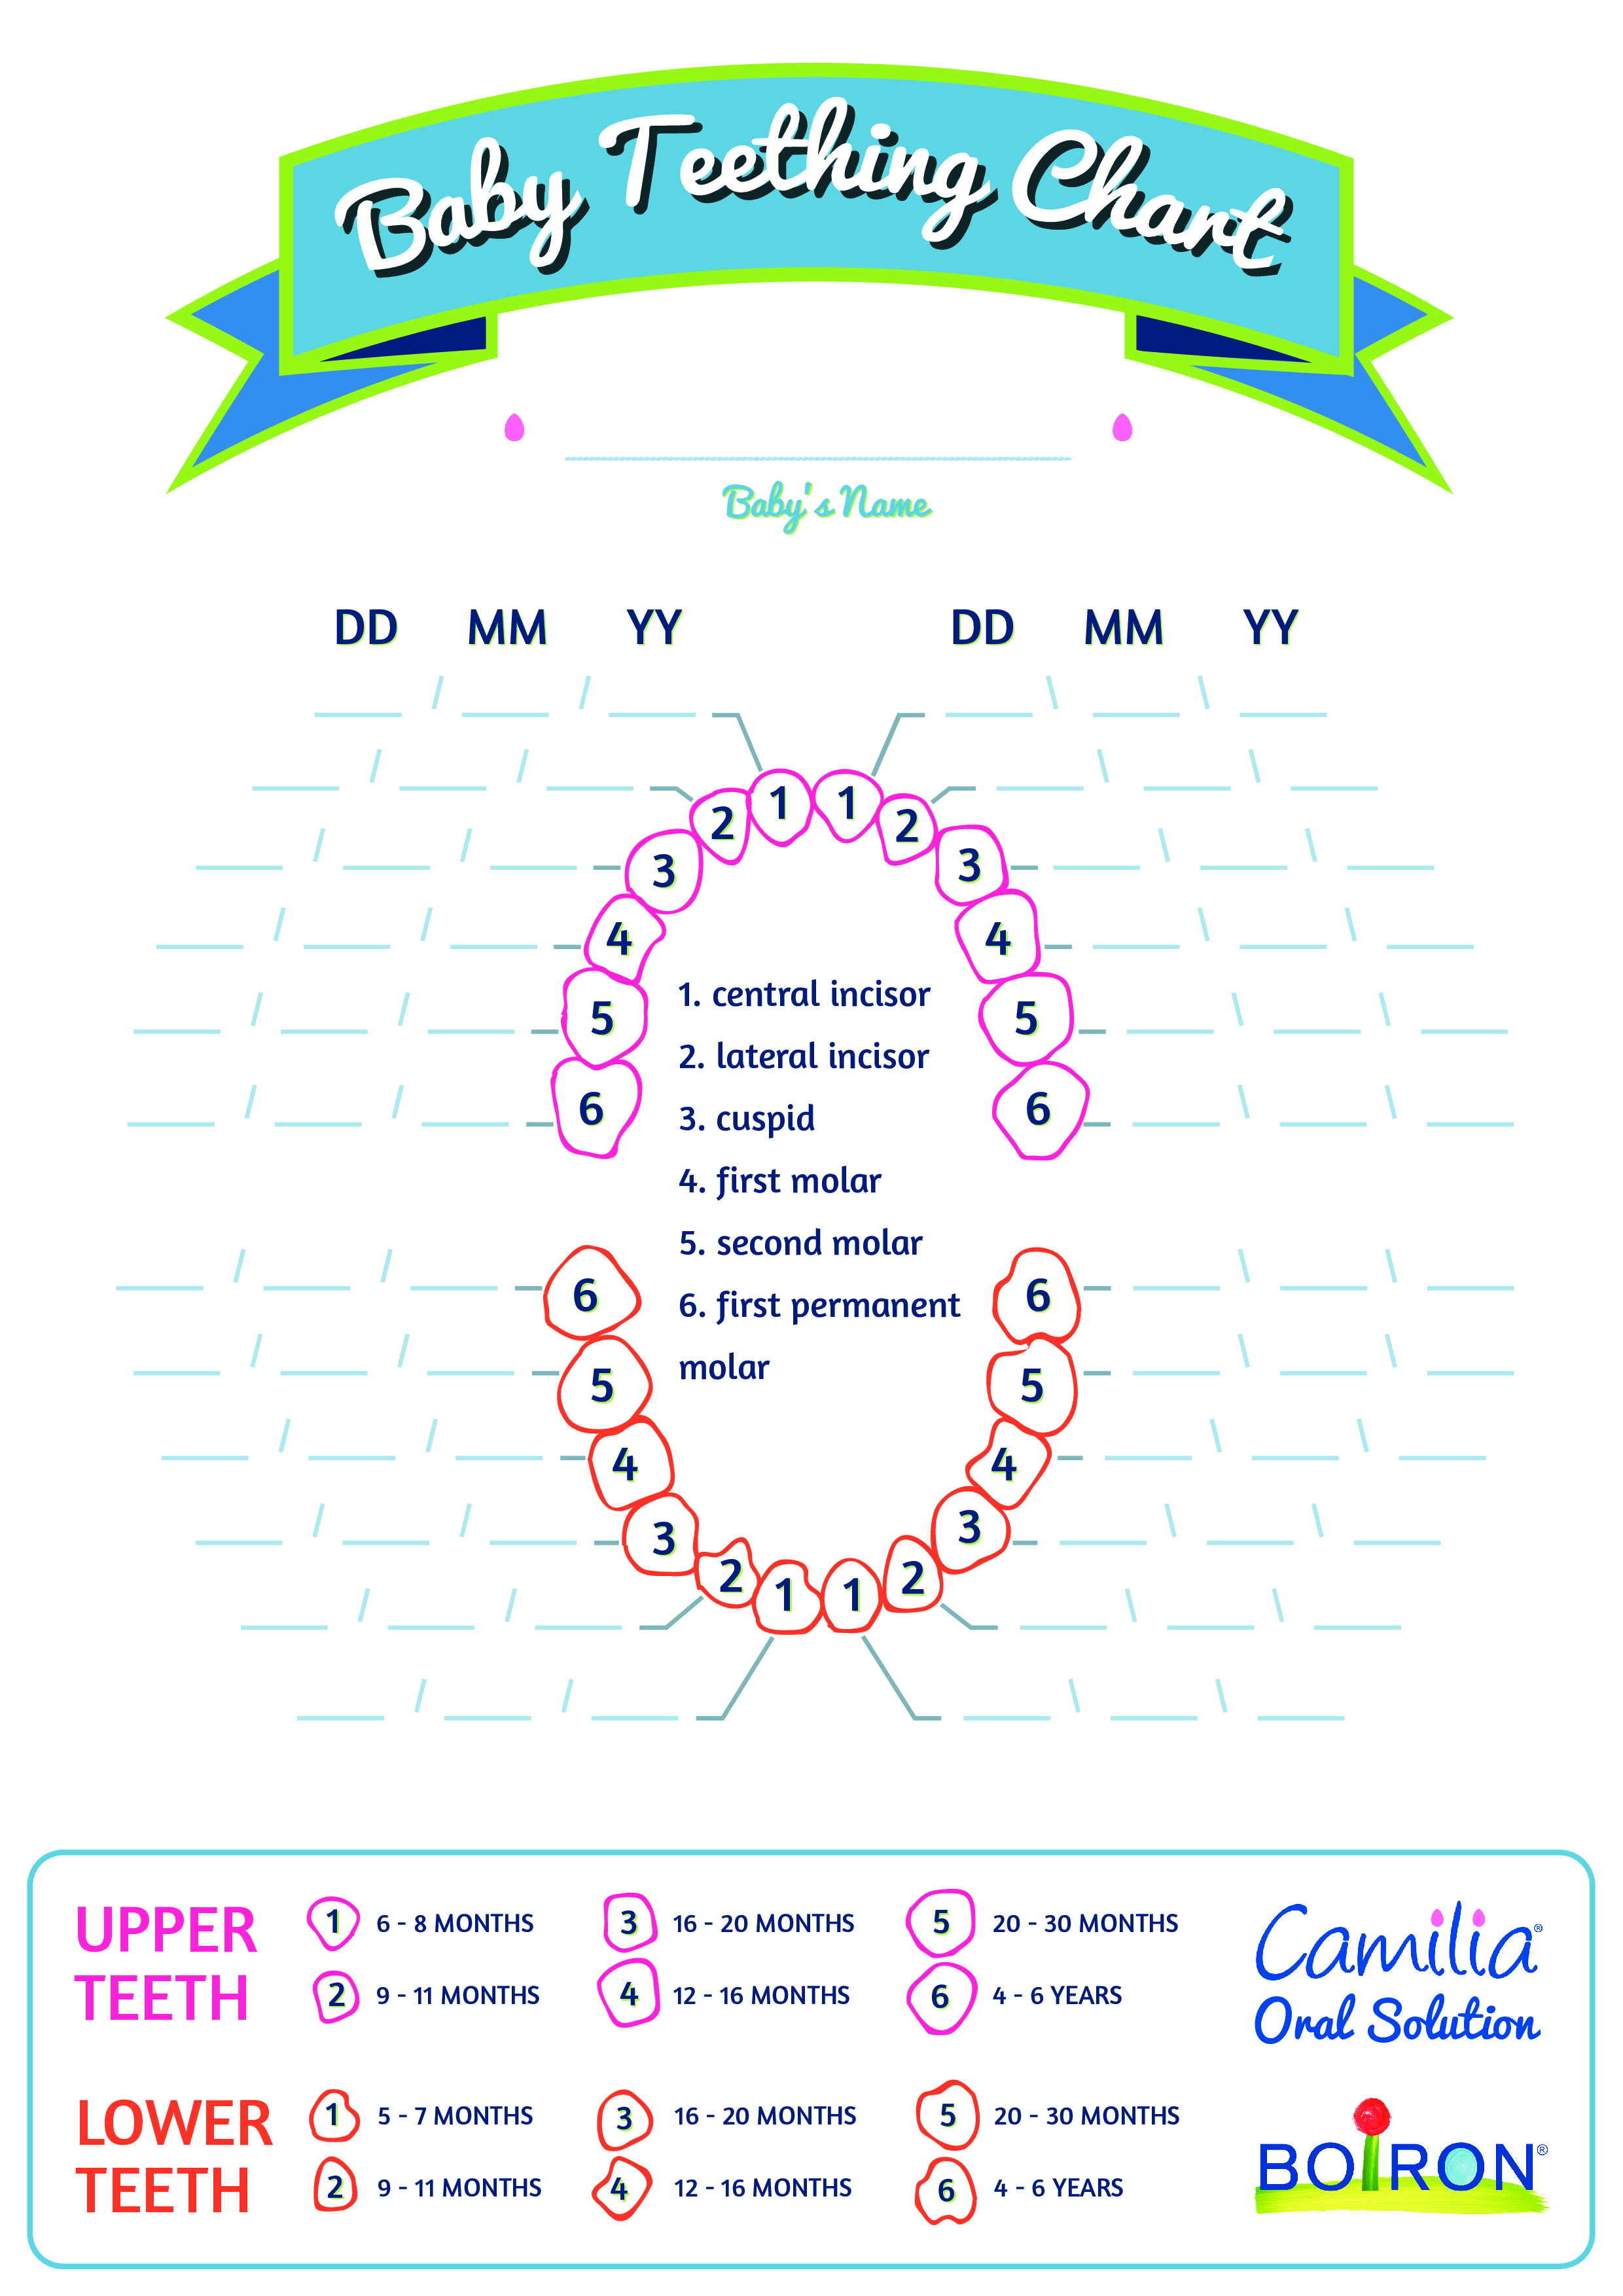 Basic Baby Teething Chart main image